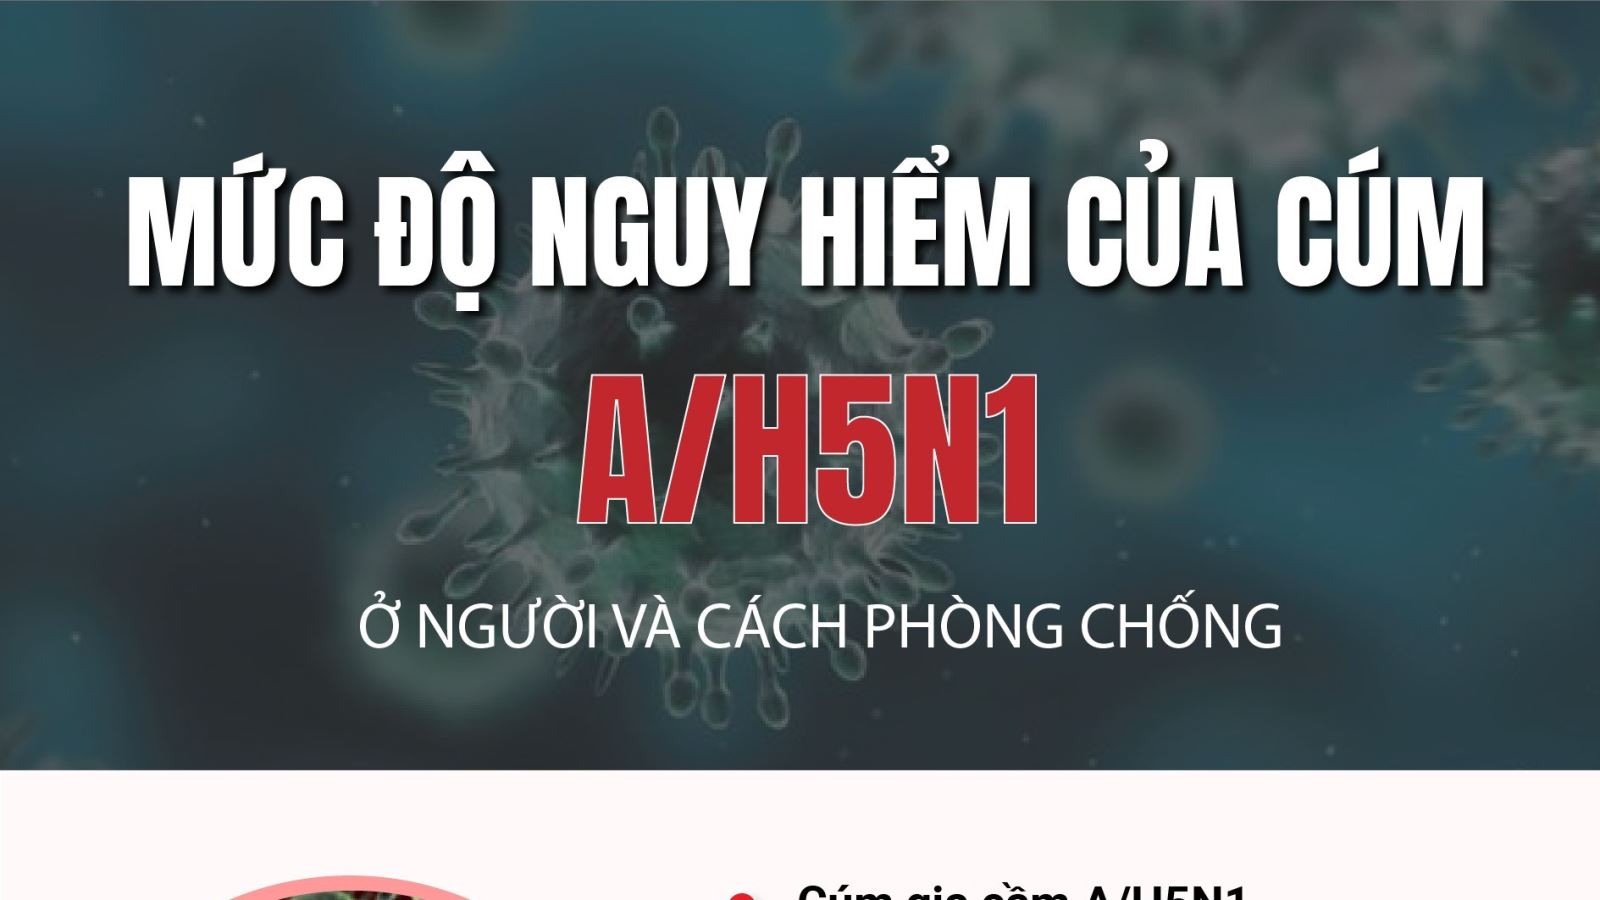 Mức độ nguy hiểm của cúm A/H5N1 ở người và cách phòng chống